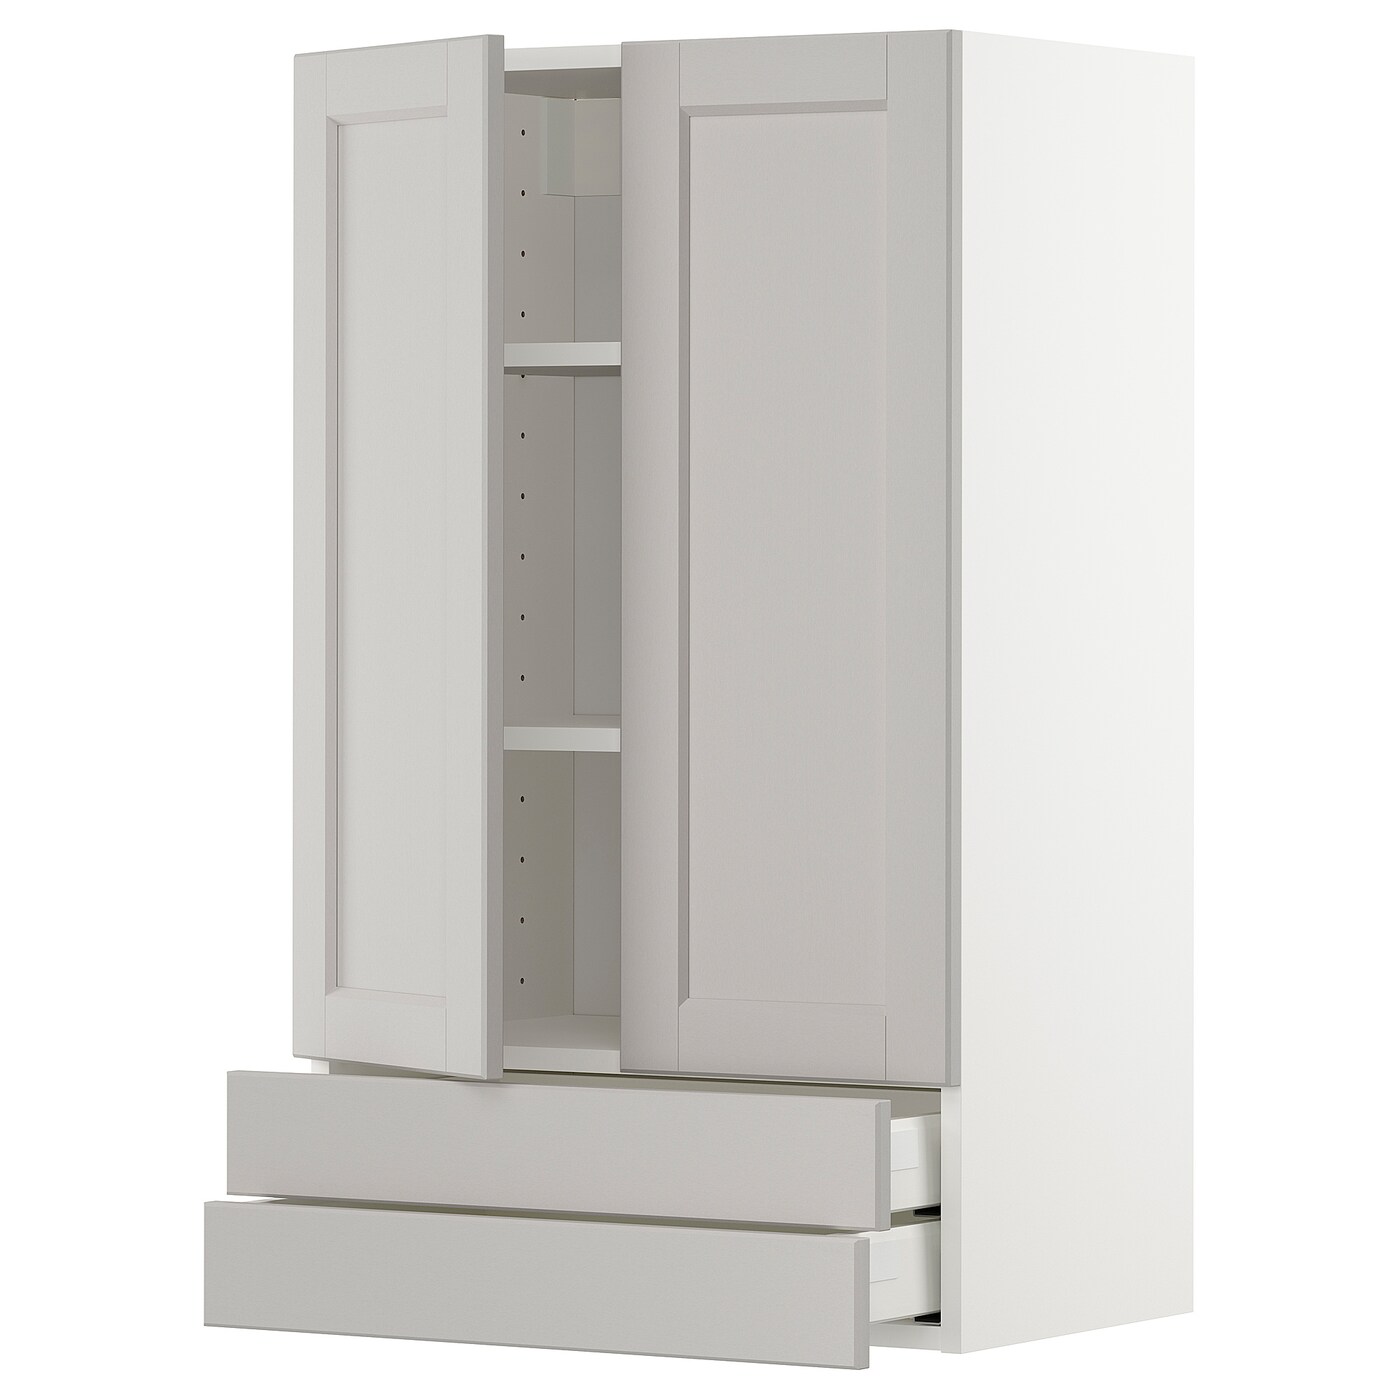 Напольный шкаф - METOD / MAXIMERA IKEA/ МЕТОД/ МАКСИМЕРА ИКЕА,  100х60 см, белый/серый